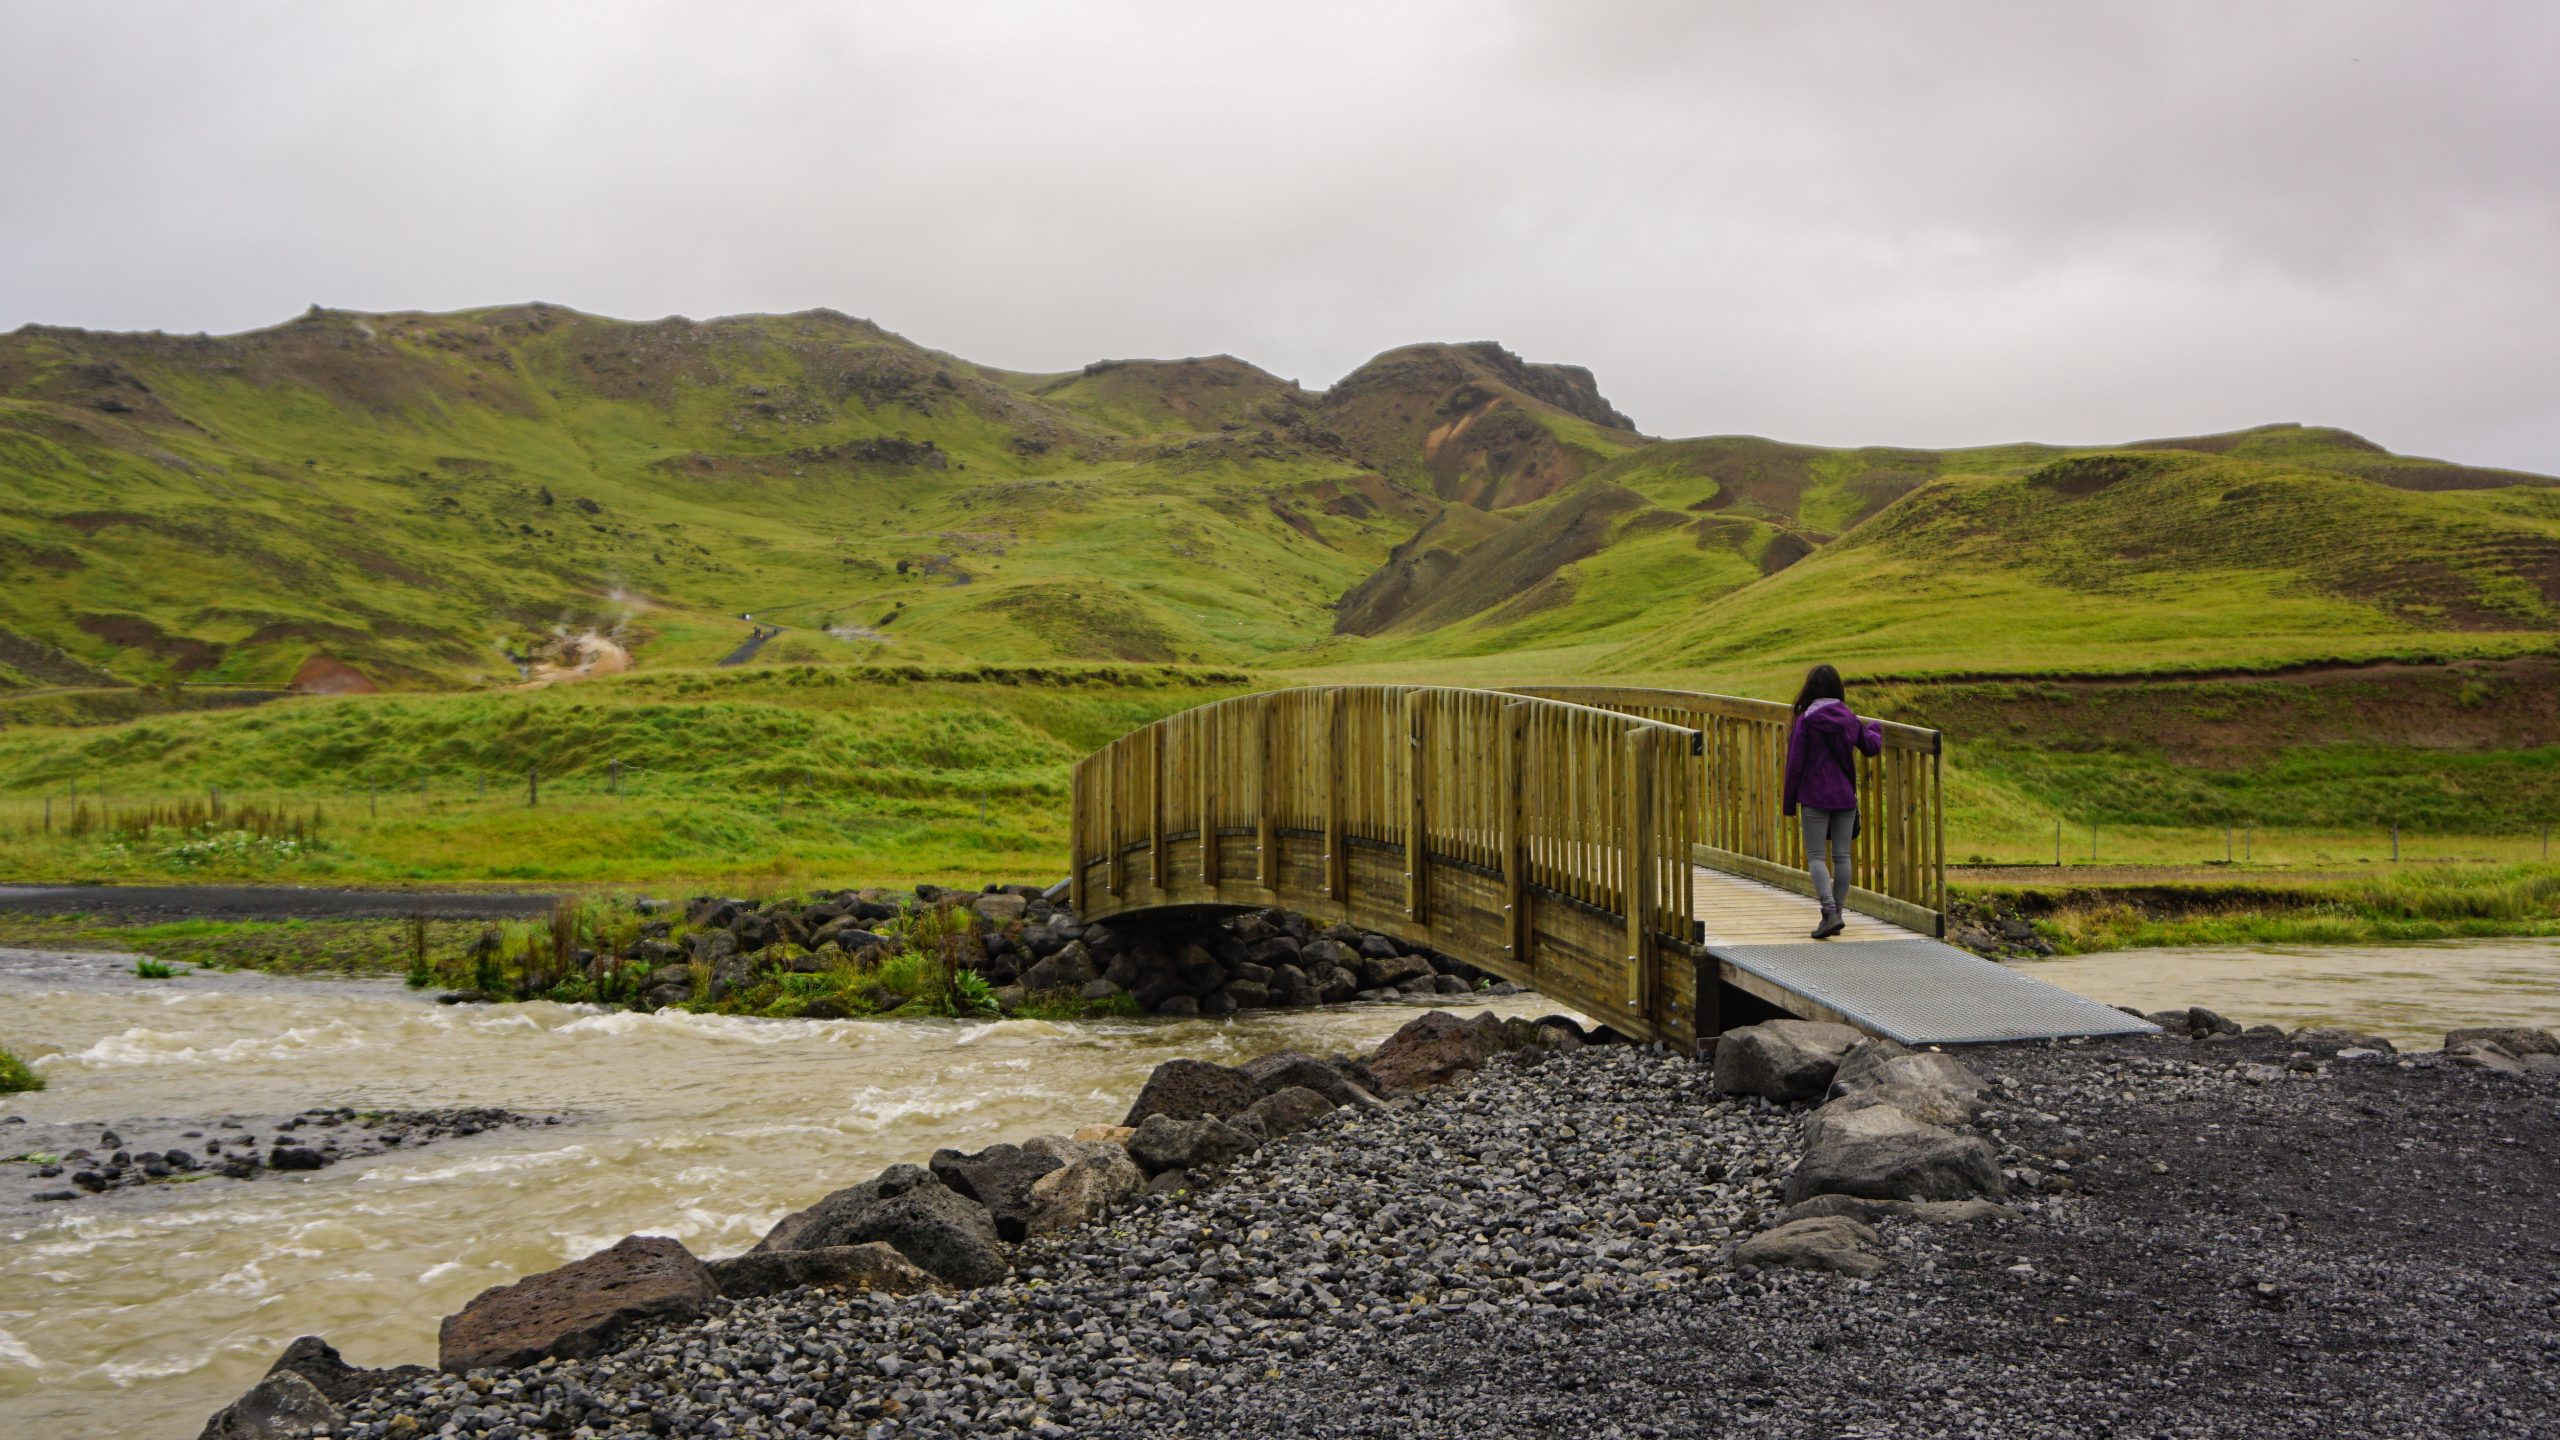 A girl in a purple jacket crossing a bridge in Reykjadalur Valley